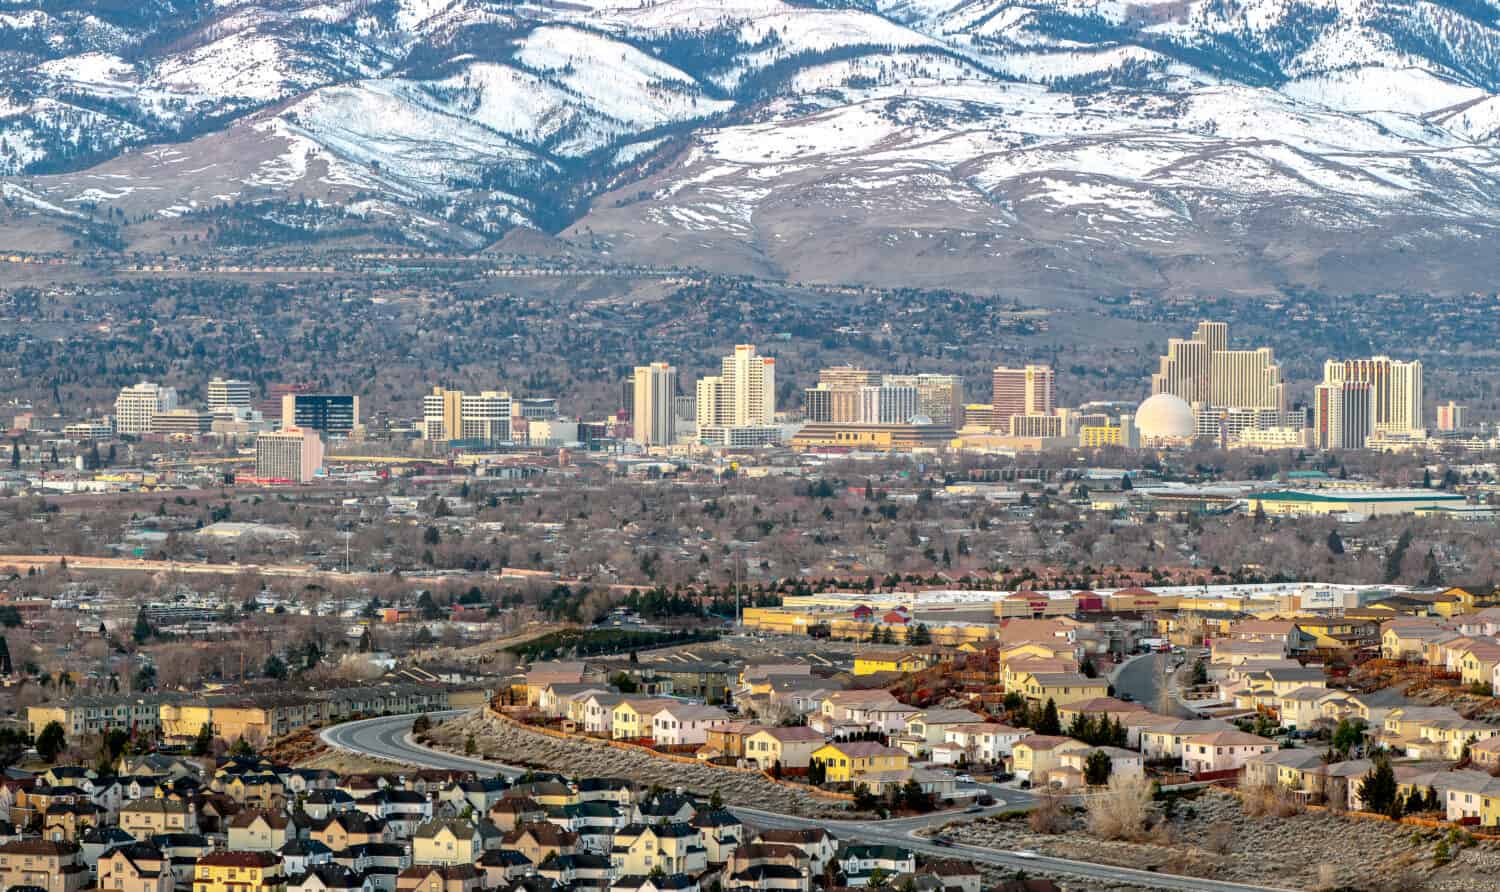 Cityscape of Reno Nevada in the winter.